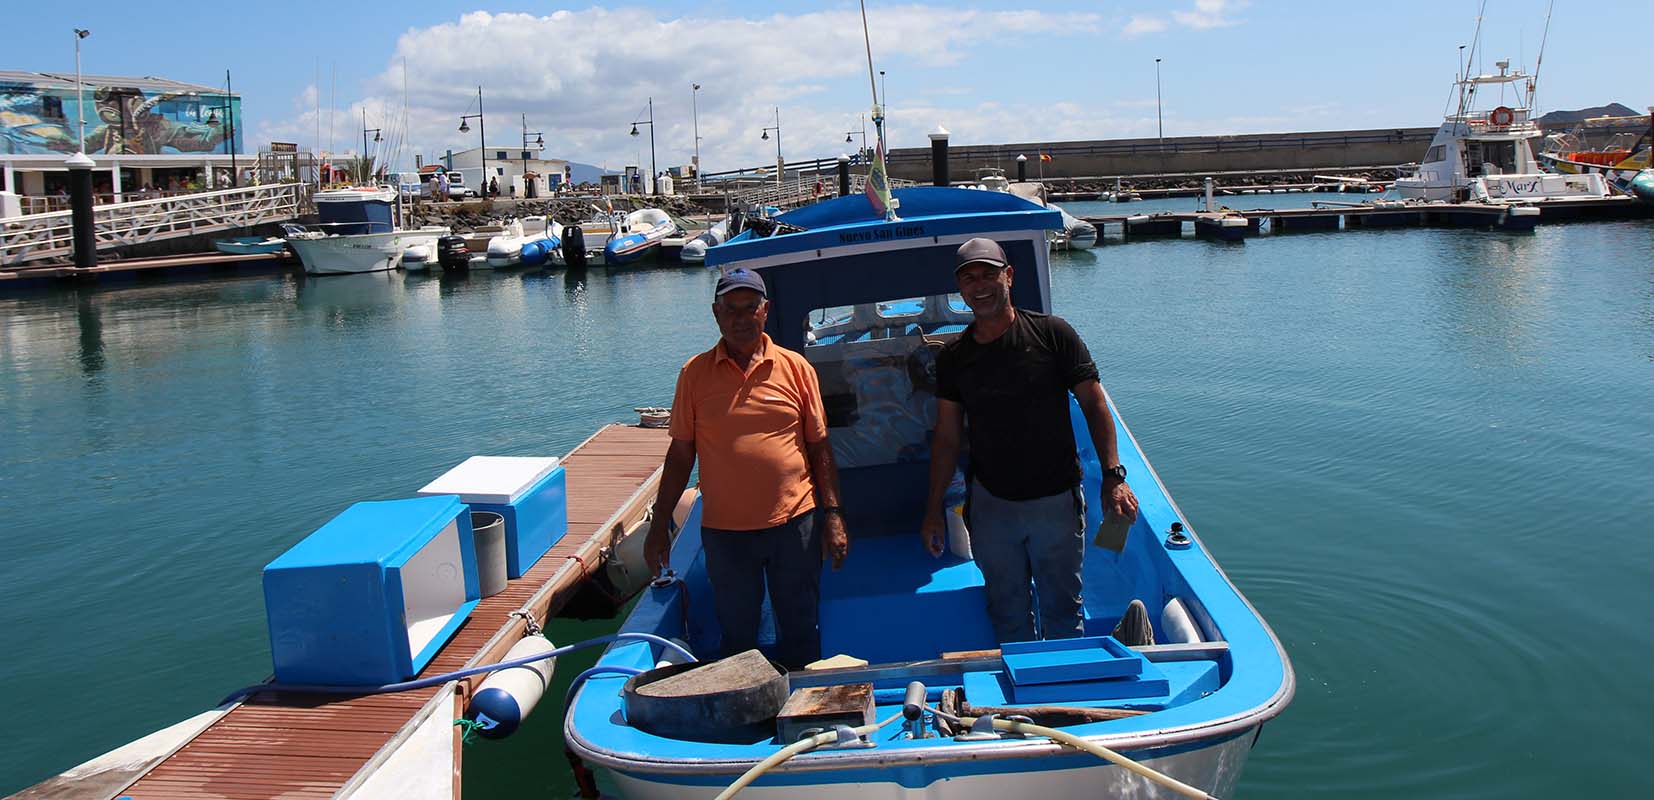 Primer barco en Canarias que hace pescaturismo